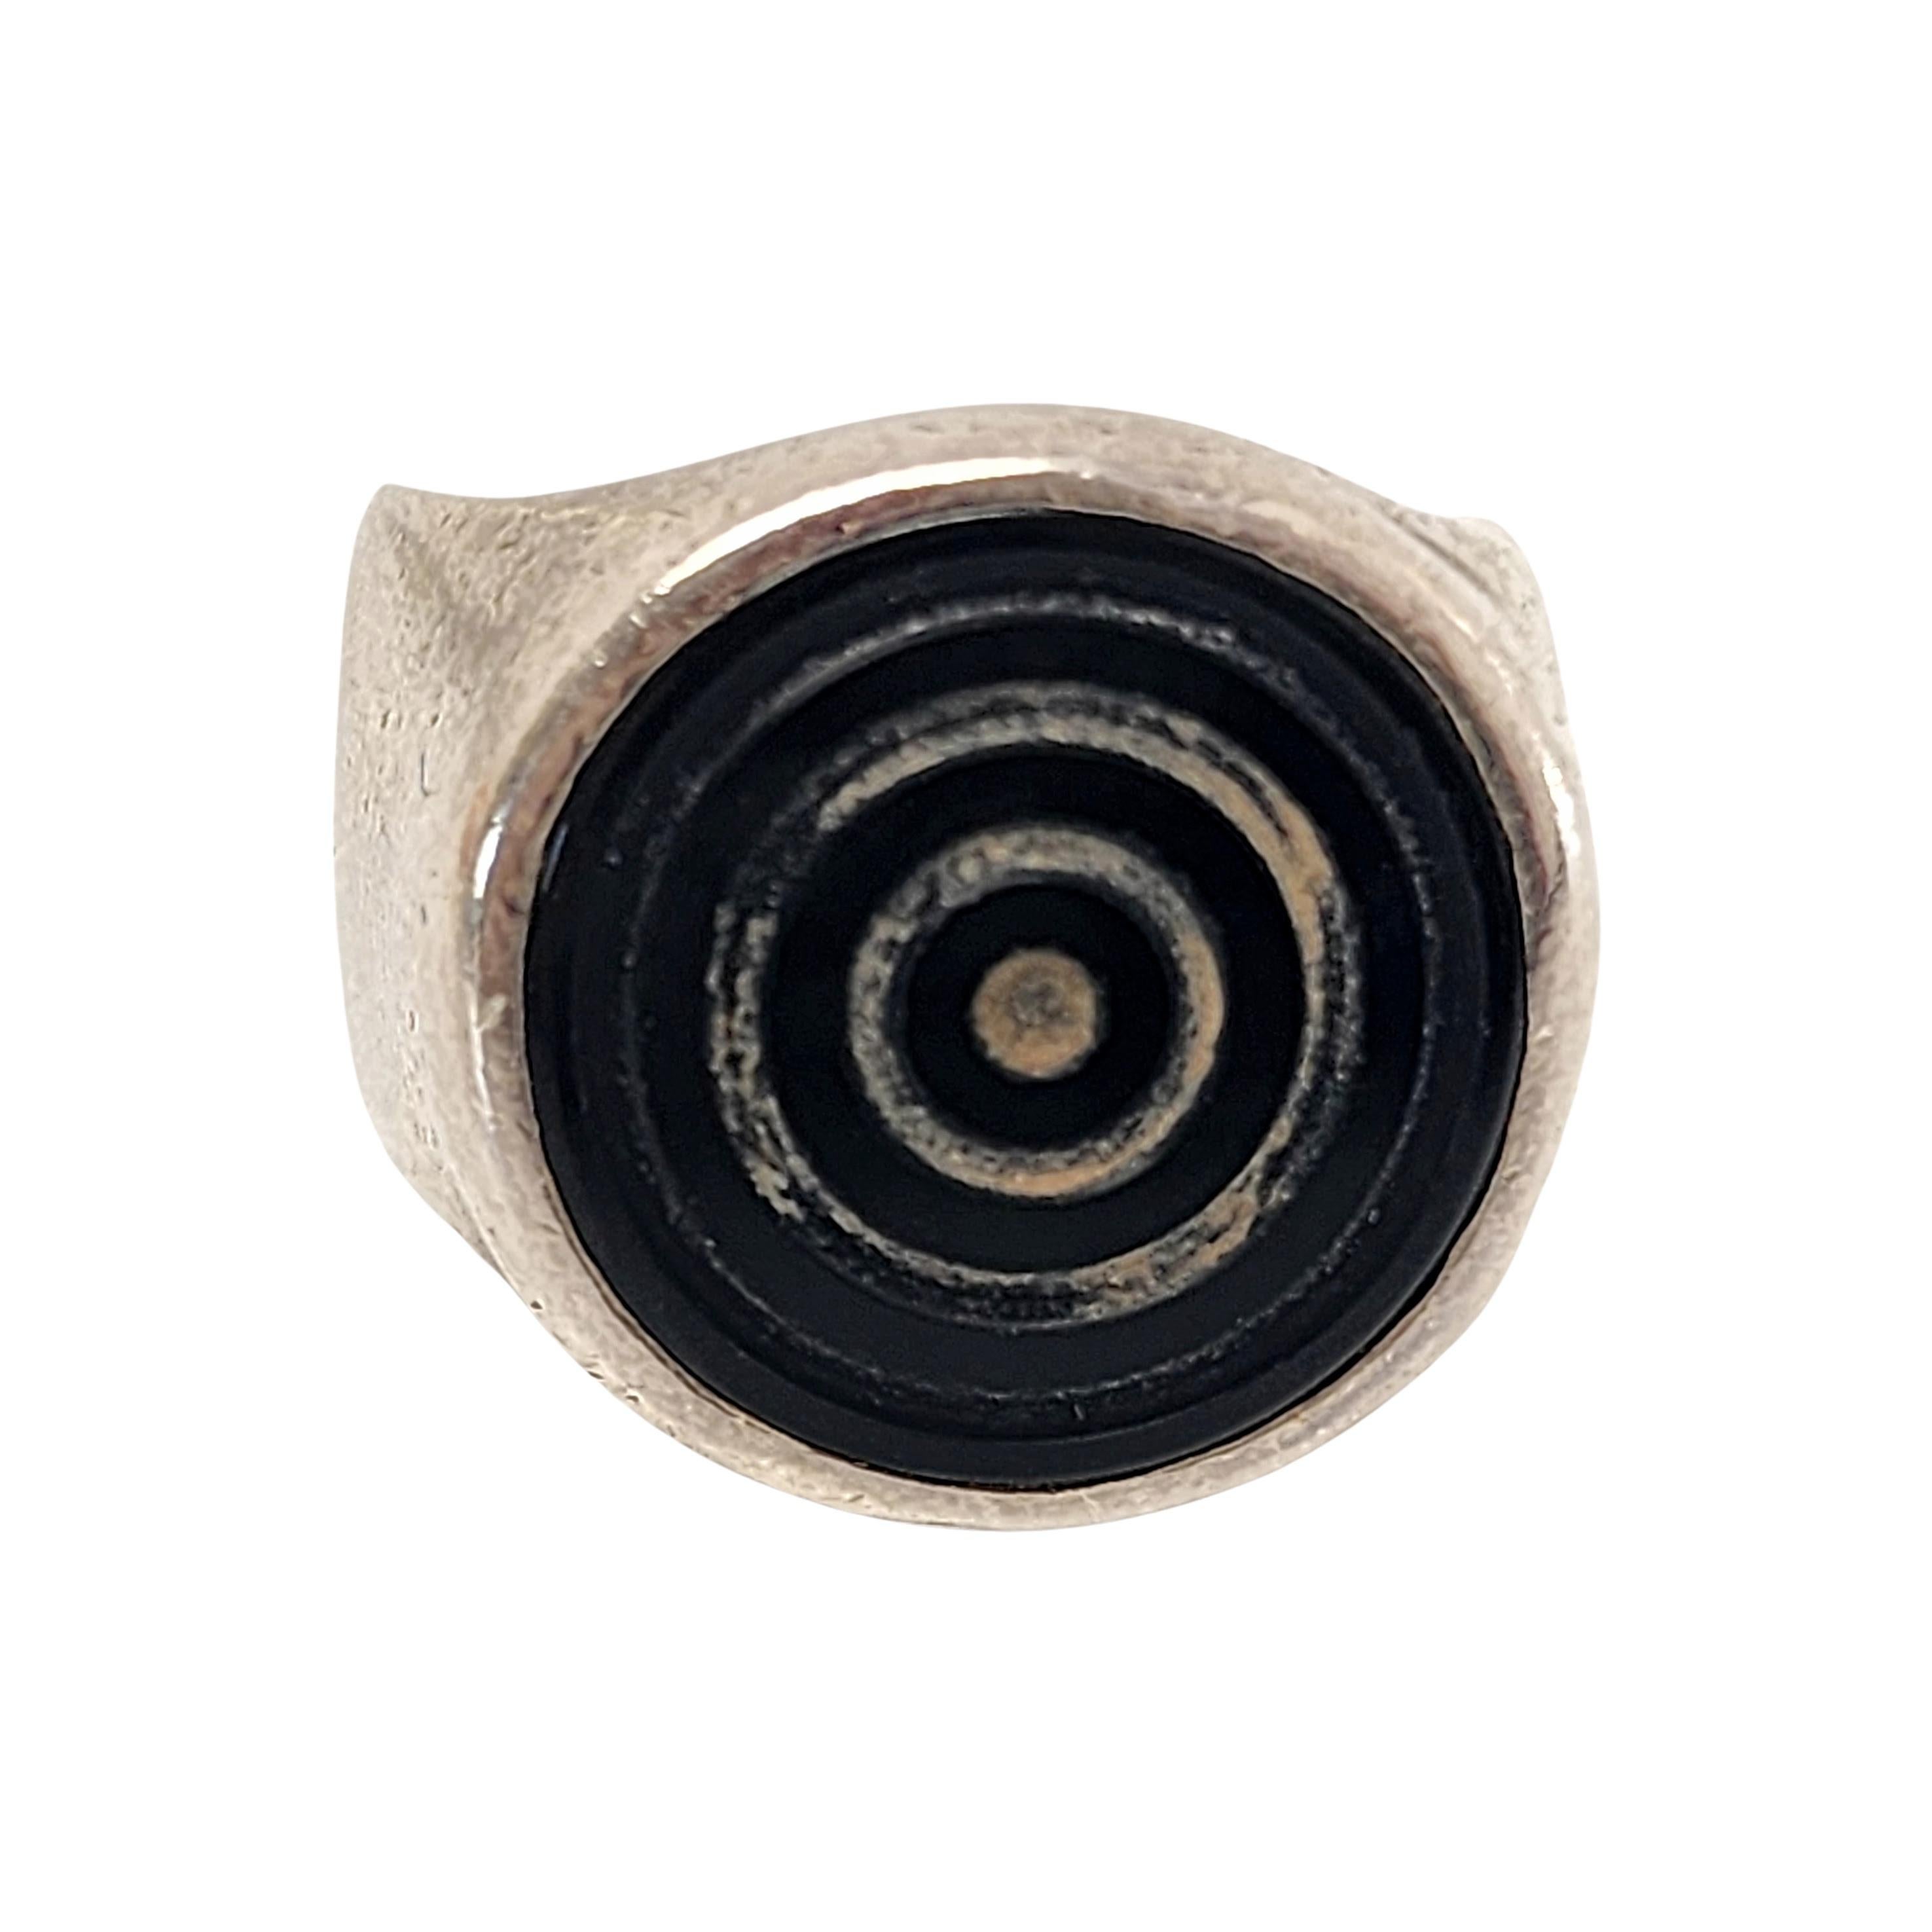 Lisa Jenks Sterling Silber Onyx Bullseye Ring, Größe 5 1/2 #14179 1